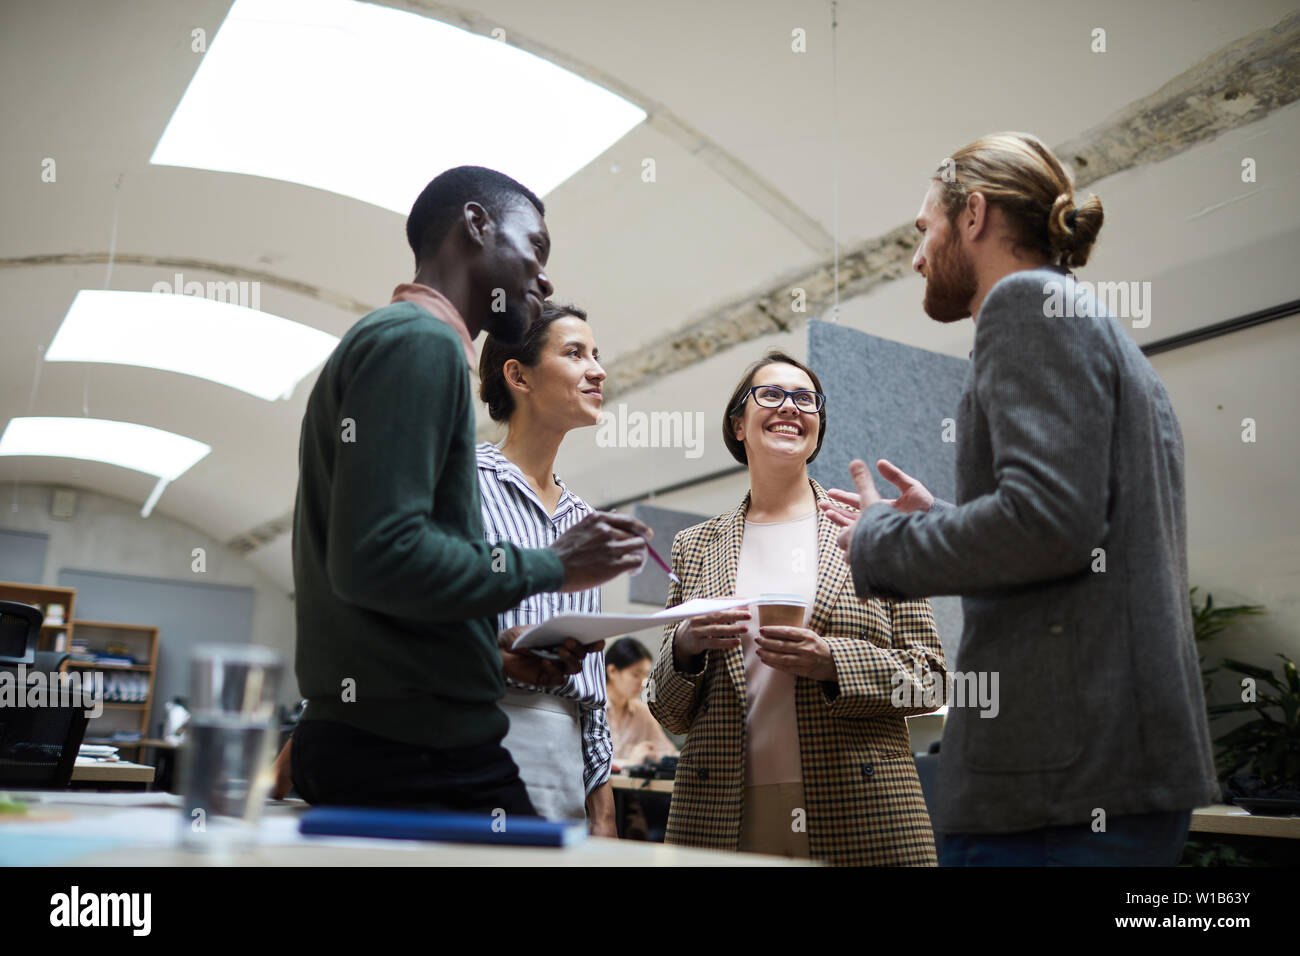 Basso angolo di visione a multi - gruppo etnico di uomini di affari che ridevano allegramente chiacchierando durante la pausa caffè in ufficio, spazio di copia Foto Stock